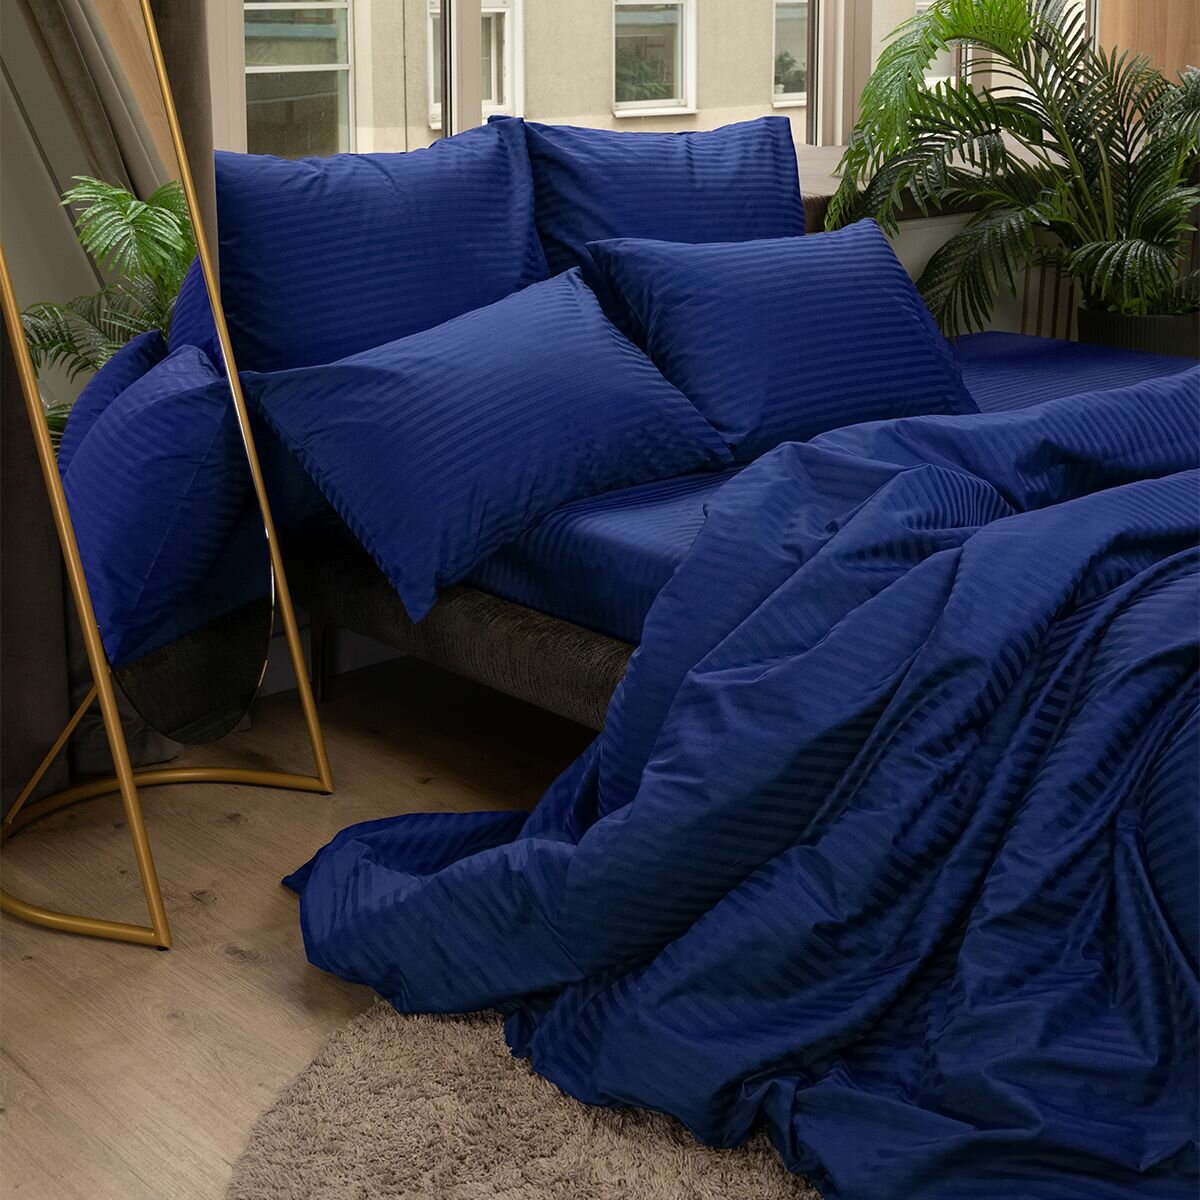 Комплект постельного белья Евро размер Monocolor Страйп сатин 100% хлопок / 4 наволочки /синий /премиум качество